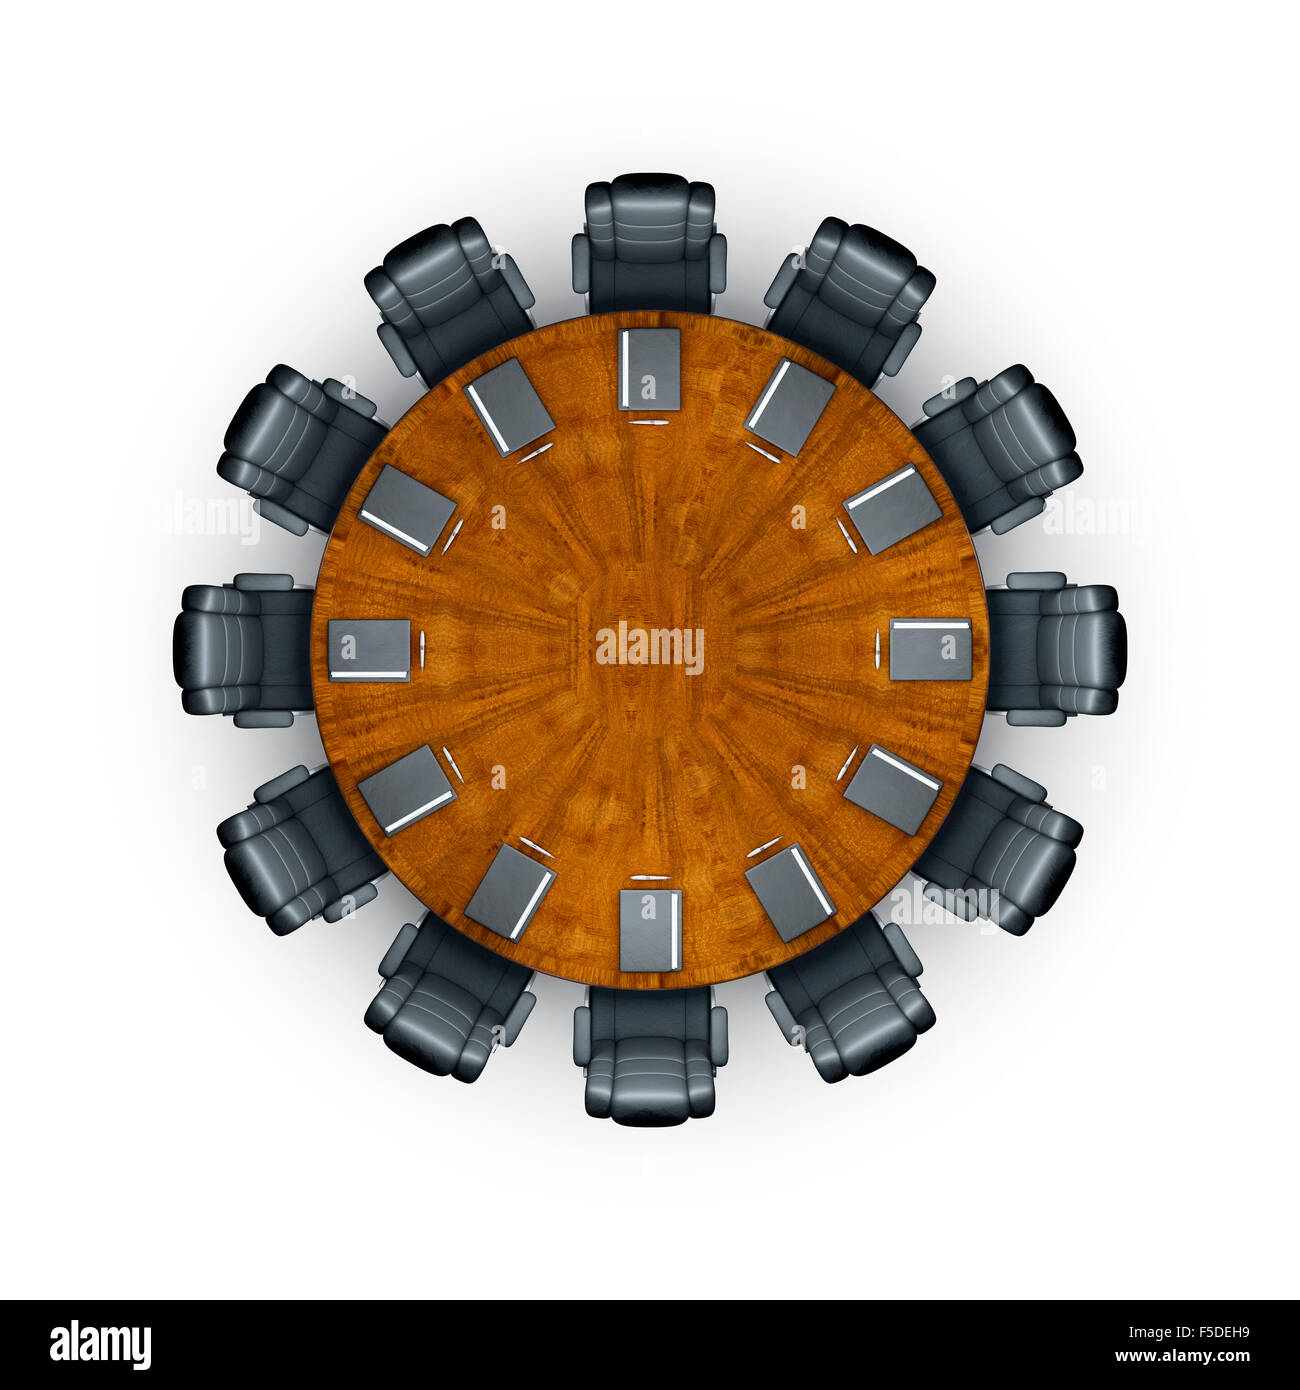 Table de conférence / horloge 3D render of table de conférence comme horloge, ajoutez simplement les mains Banque D'Images